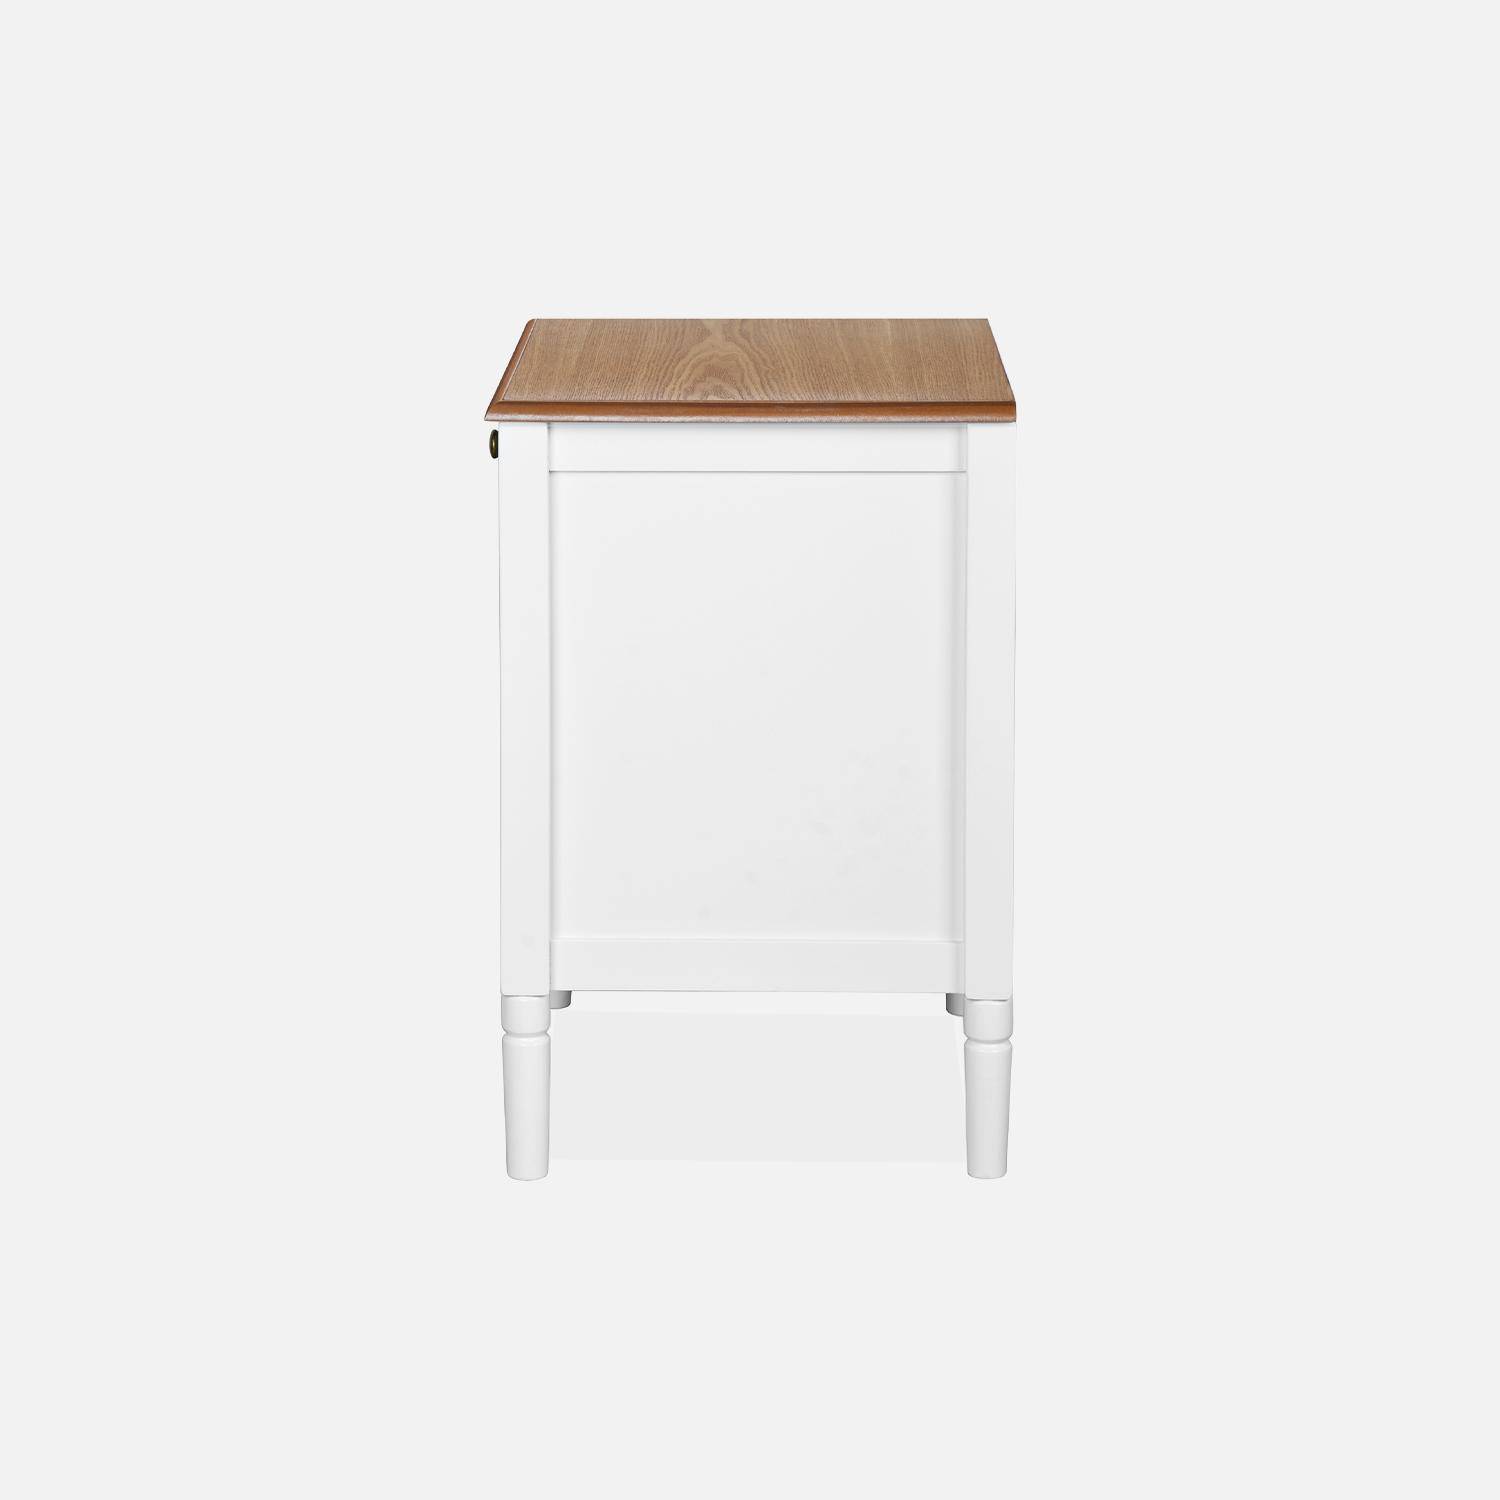 Table de chevet en placage frêne, blanc et bois, pieds en pin, 1 tiroir et 1 niche Photo6